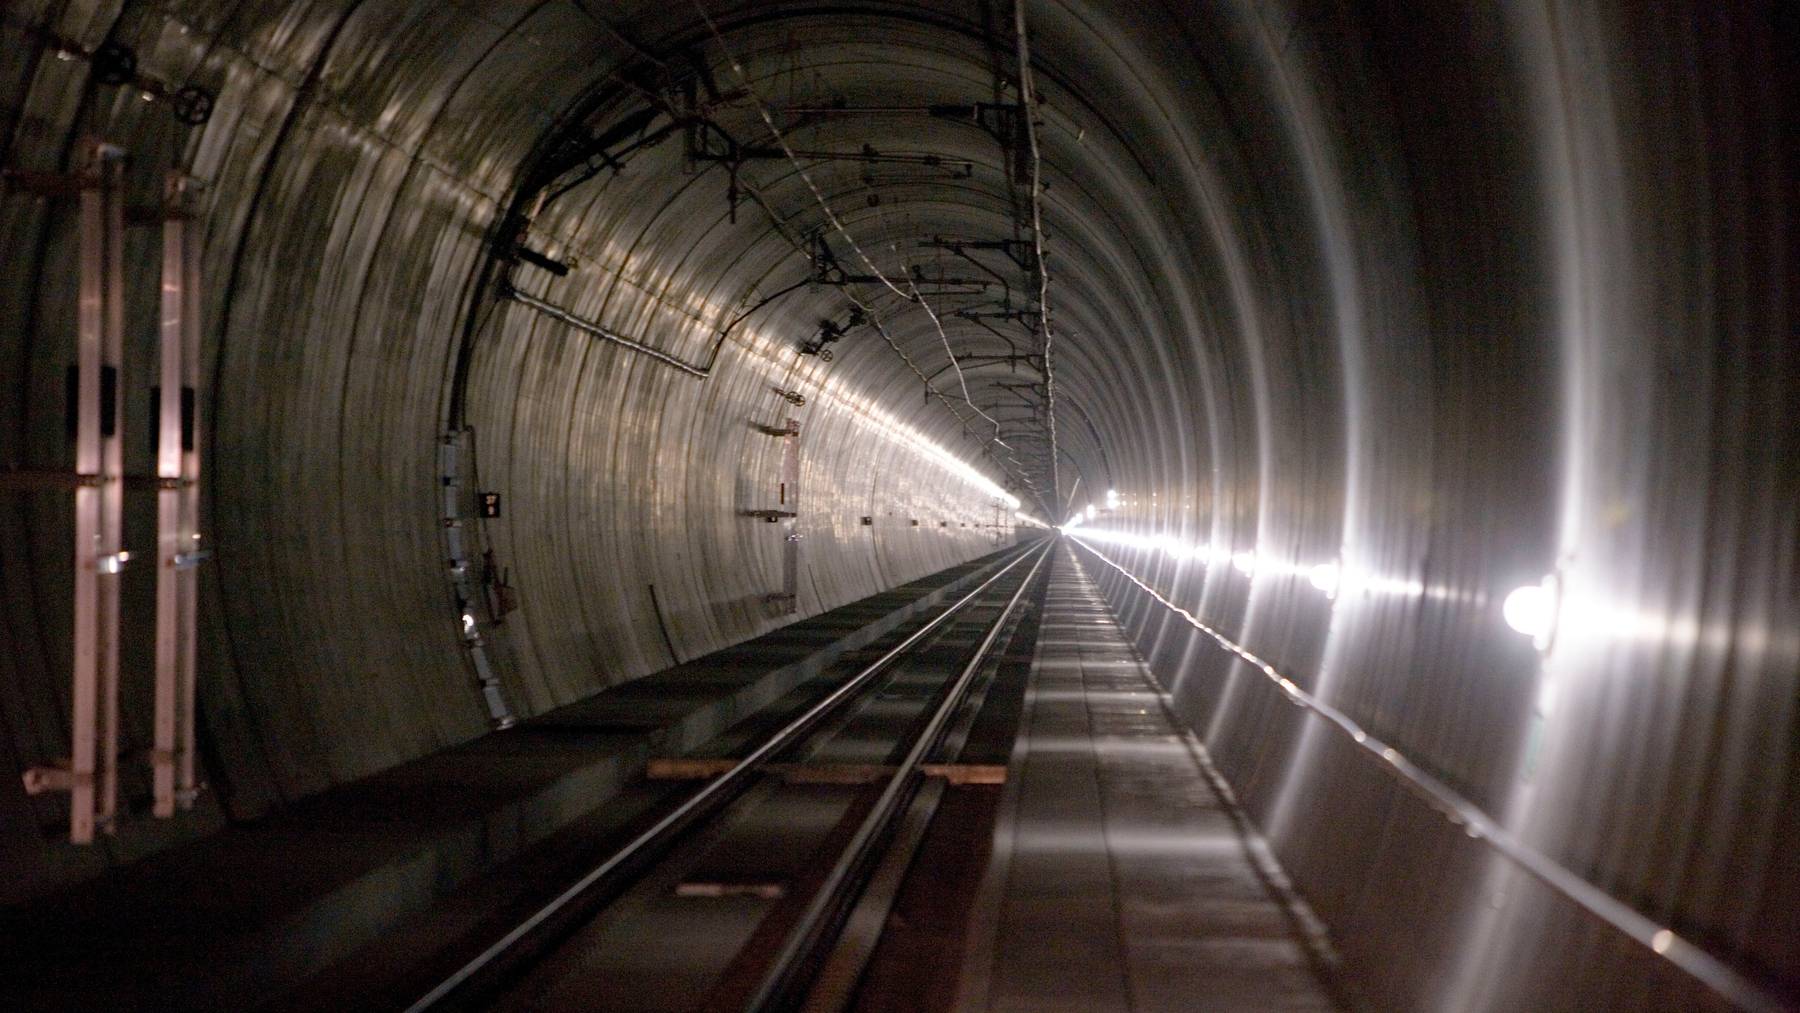  Die 150 Passagiere mussten mehrere Stunden im dunklen Tunnel ausharren. (Archivbild)